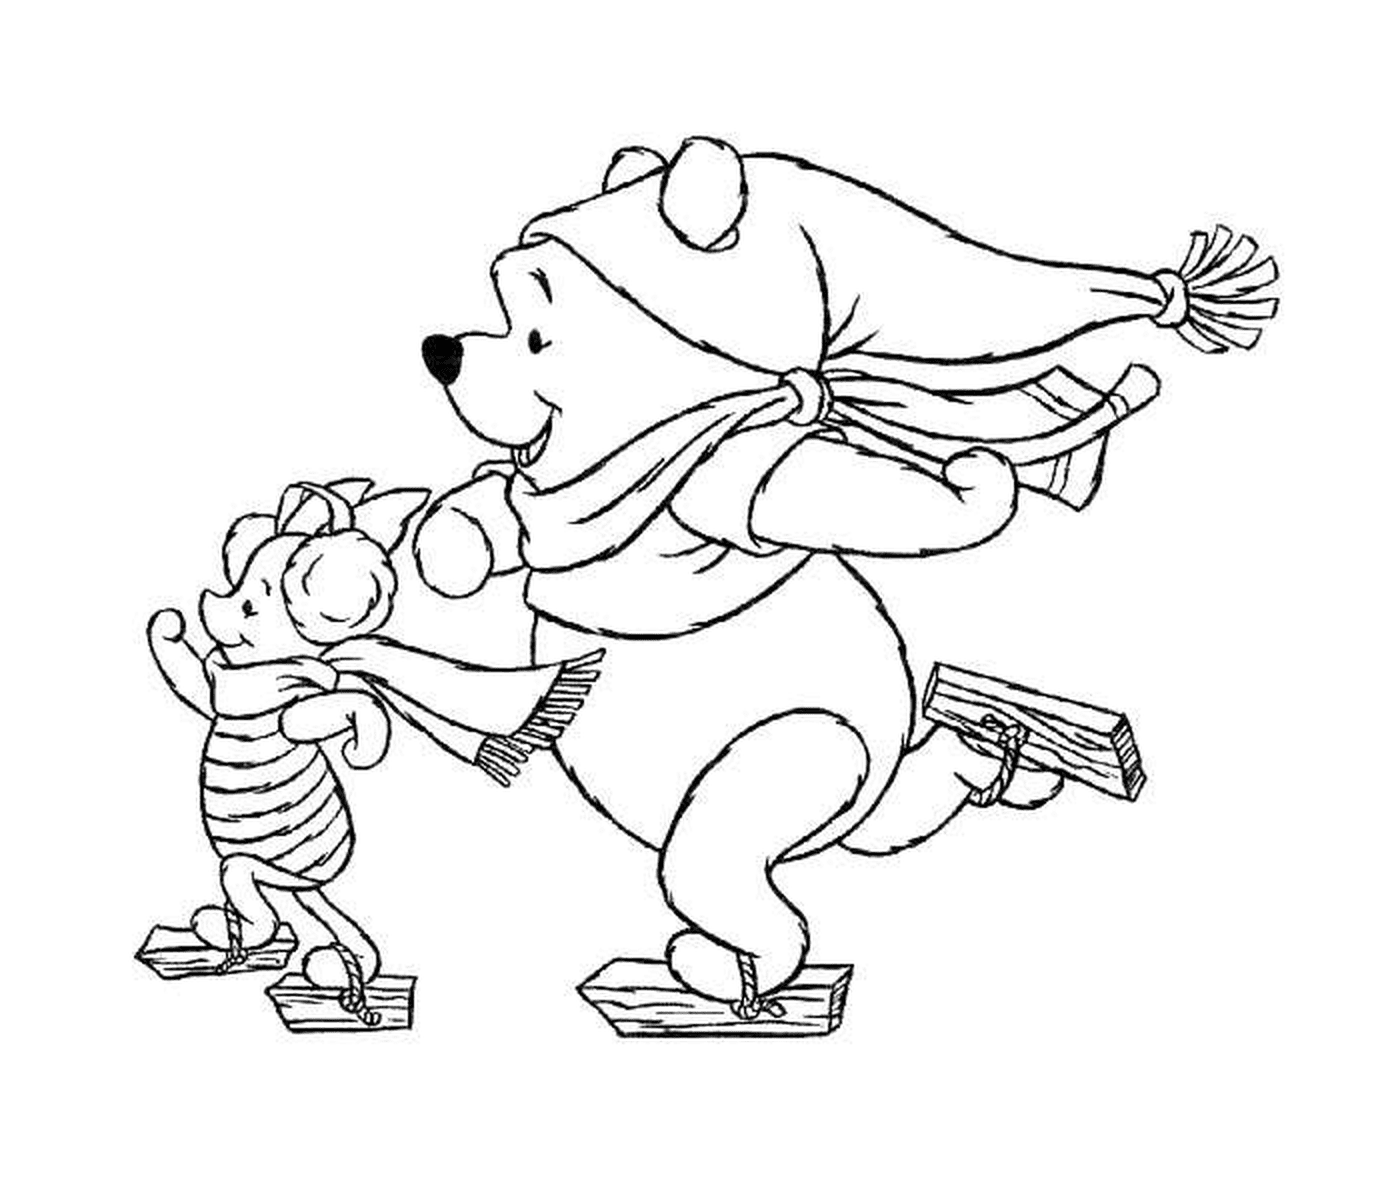  Winnie el oso y Porcinet 